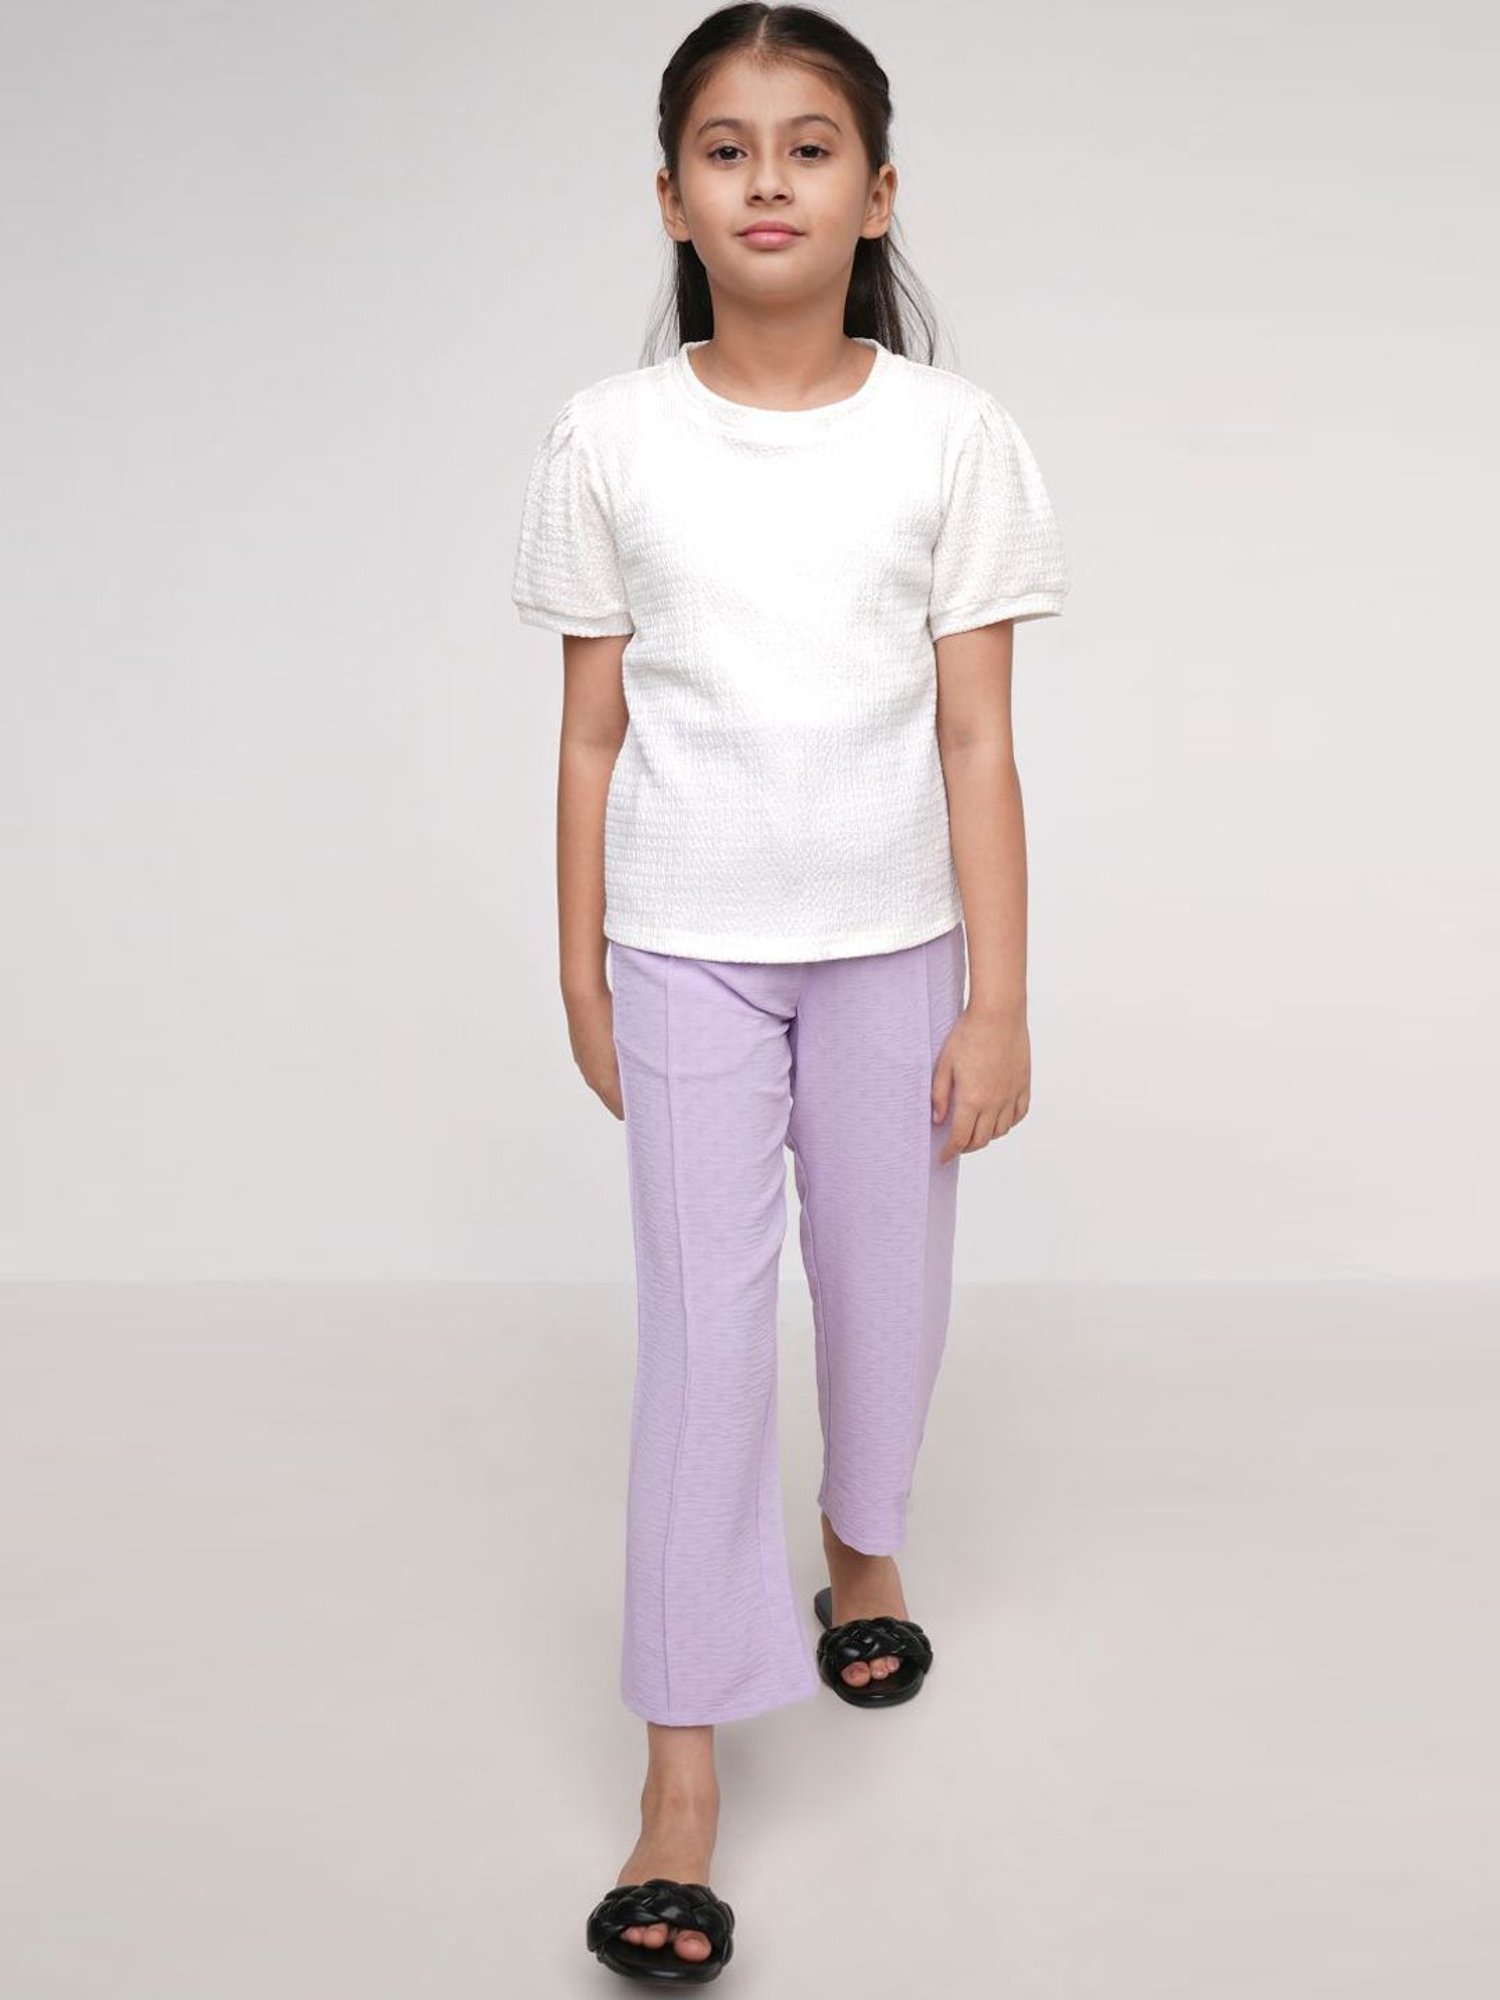 Fashion  Beauty Corner  If you like lilac colour Brand  Zara  Blazer   Xs  S  M  L Trouser  Xs  S  M  L  XL  Facebook